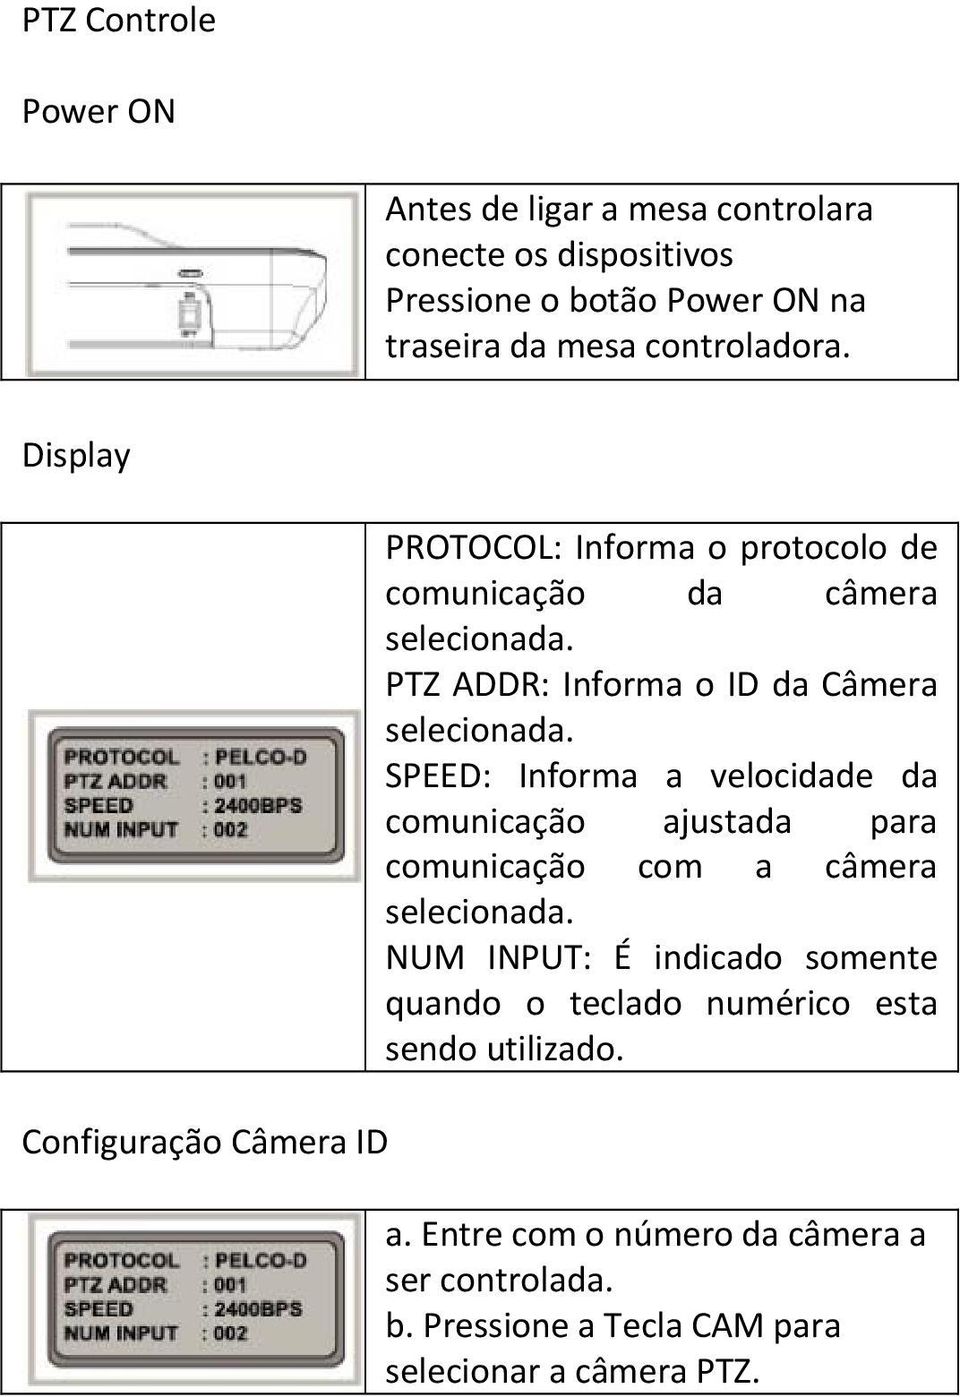 PTZ ADDR: Informa o ID da Câmera selecionada. SPEED: Informa a velocidade da comunicação ajustada para comunicação com a câmera selecionada.